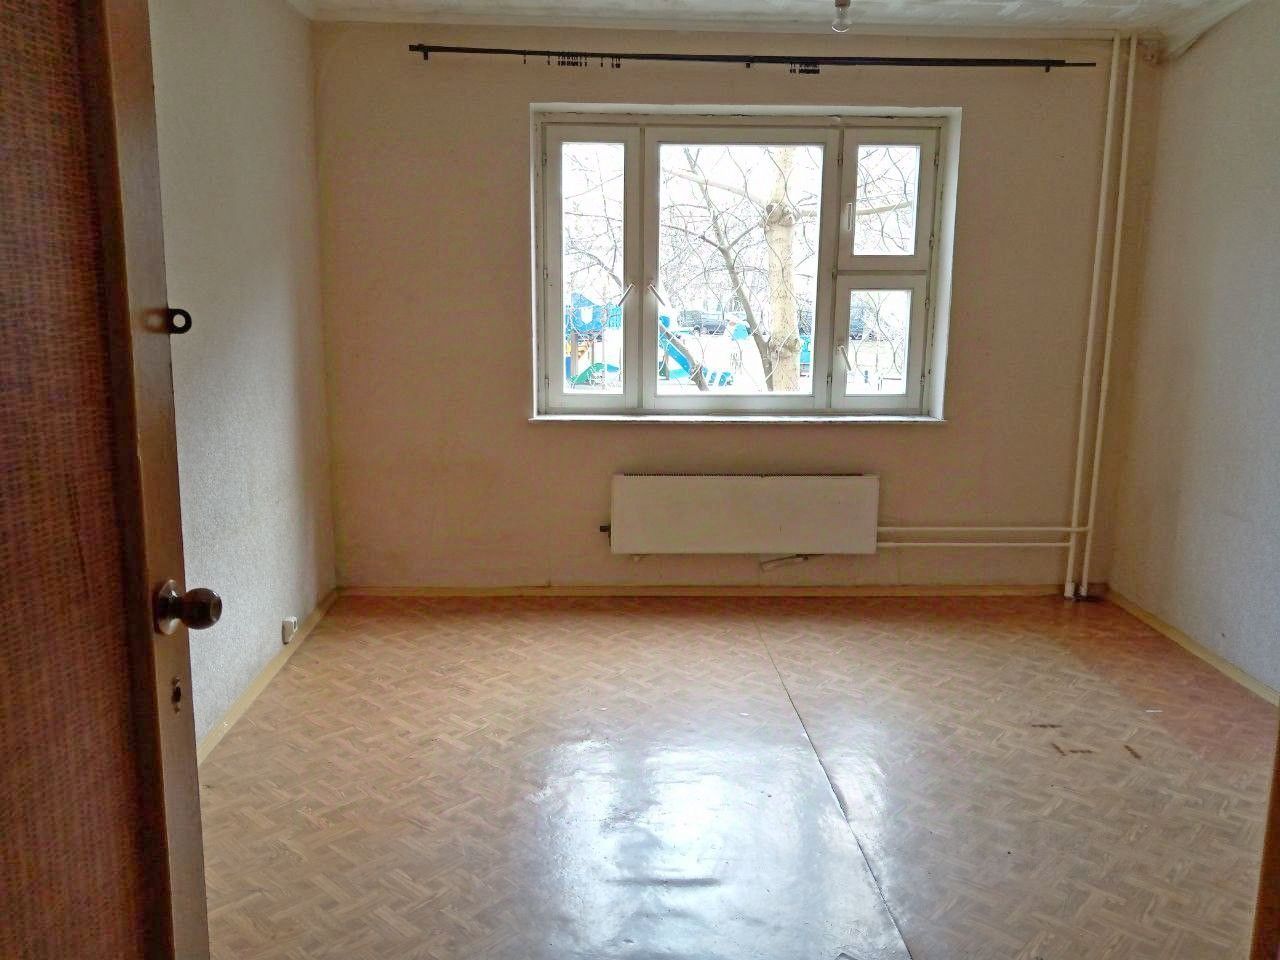 Продам квартиру в Москве по адресу Волжский бульвар, 29к1, площадь 55 квм Недвижимость Москва (Россия) общ